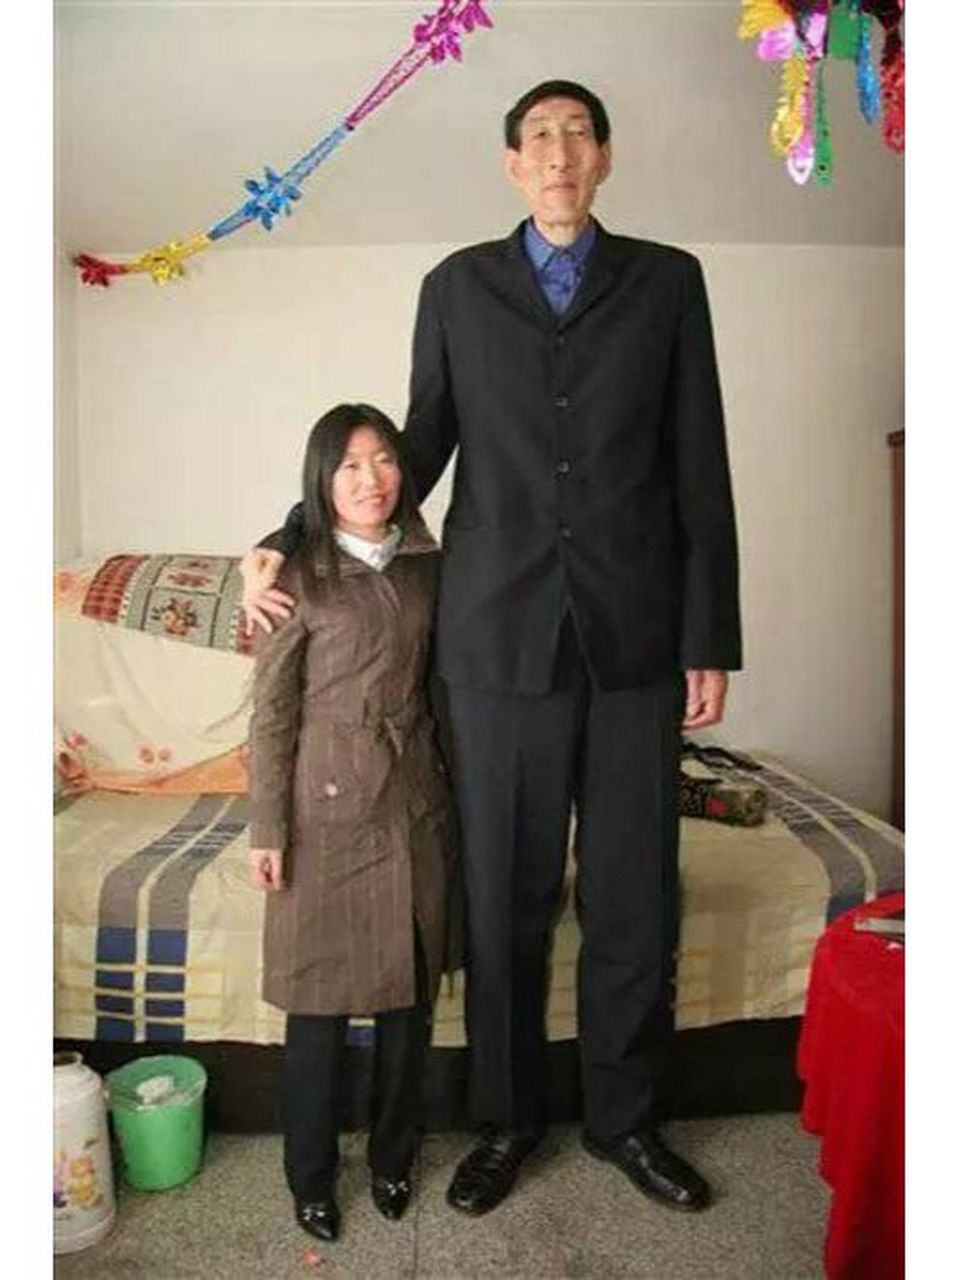 世界上最高的人—瓦德罗,高达2米72,重达222公斤,加之性情温和,故得